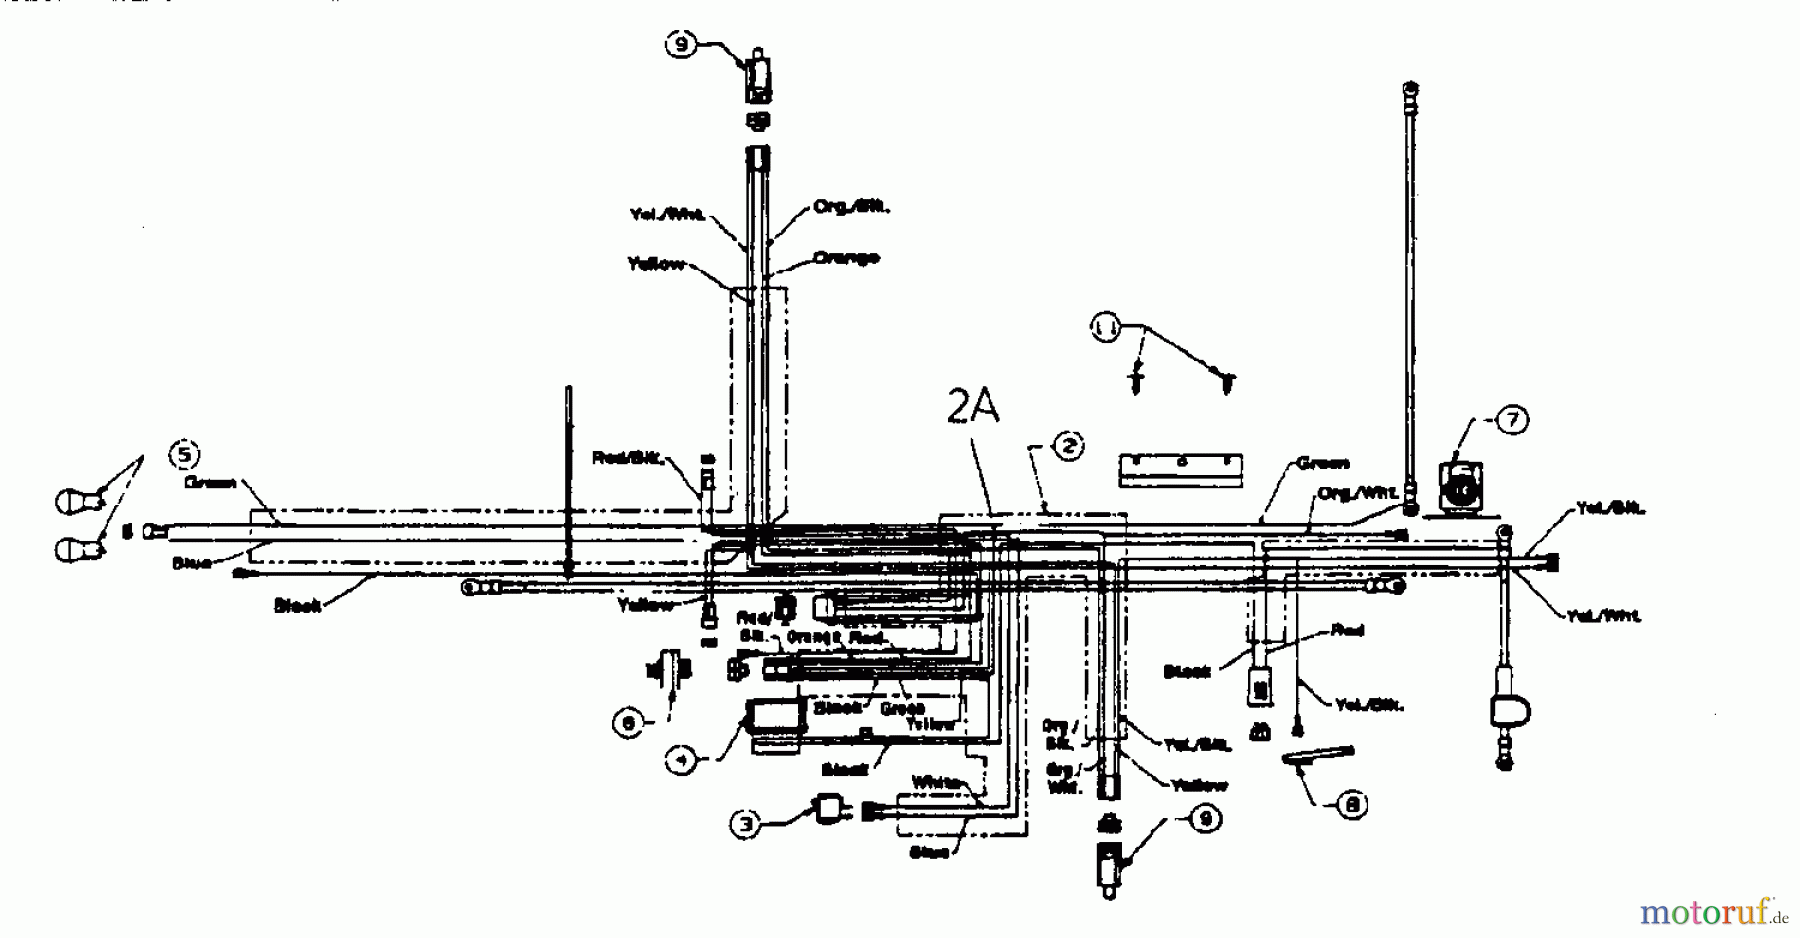  Edenparc Tracteurs de pelouse B 145107 13AP675G608  (1999) Plan electrique pour O.H.V.